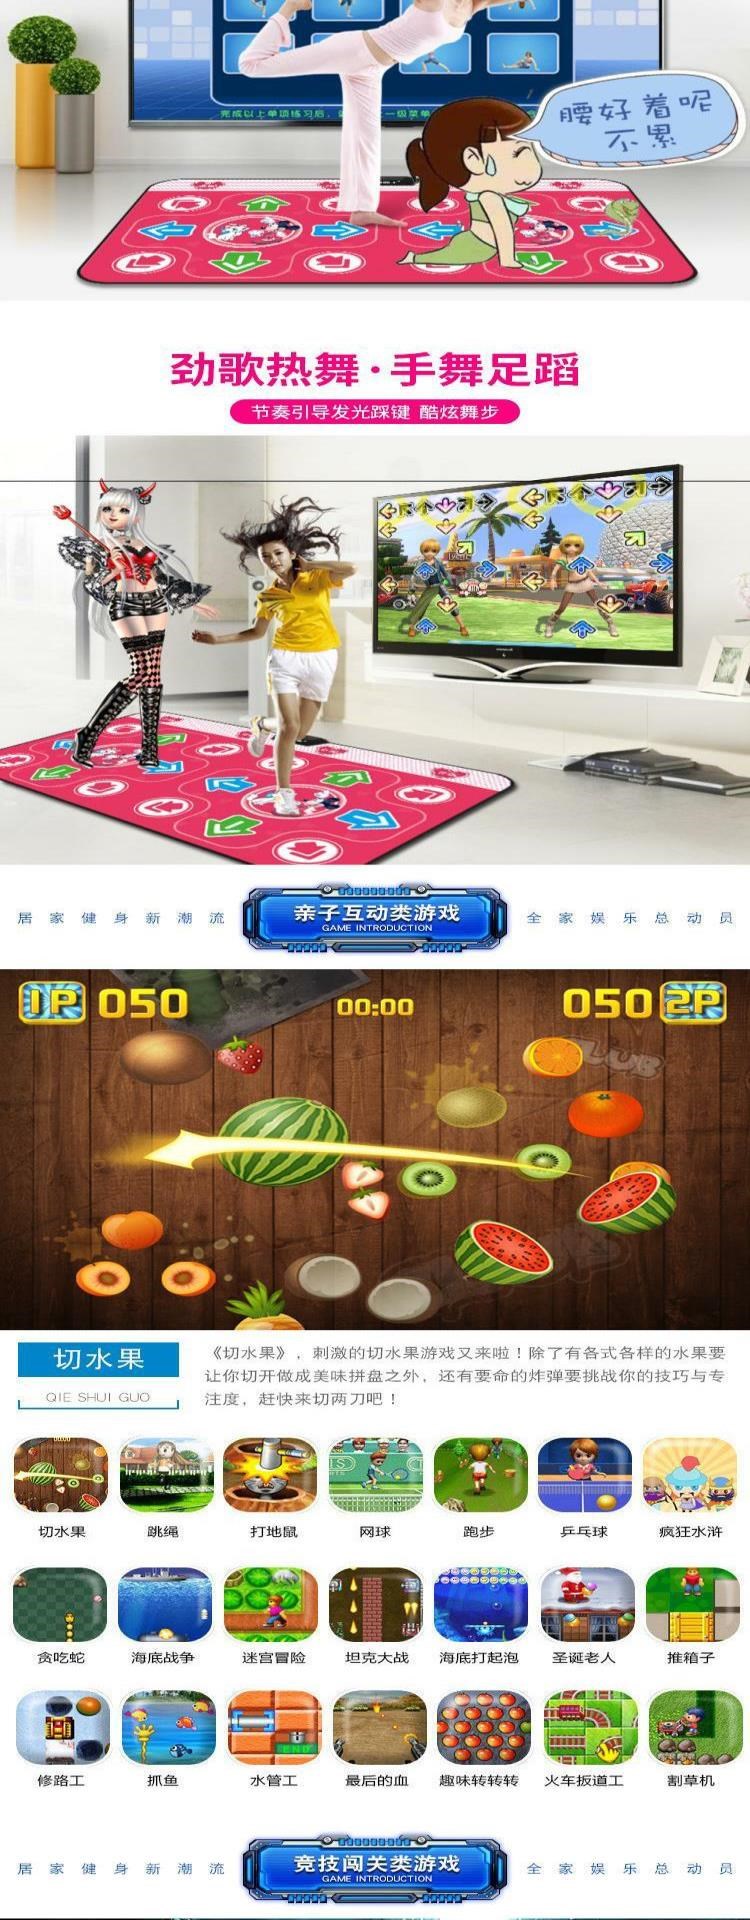 Thảm khiêu vũ giao diện TV mục đích kép Internet ngôi nhà của người nổi tiếng. Cô gái năng động trong phòng khách chơi trò chơi chống trượt somatosensory cha mẹ-con - Dance pad